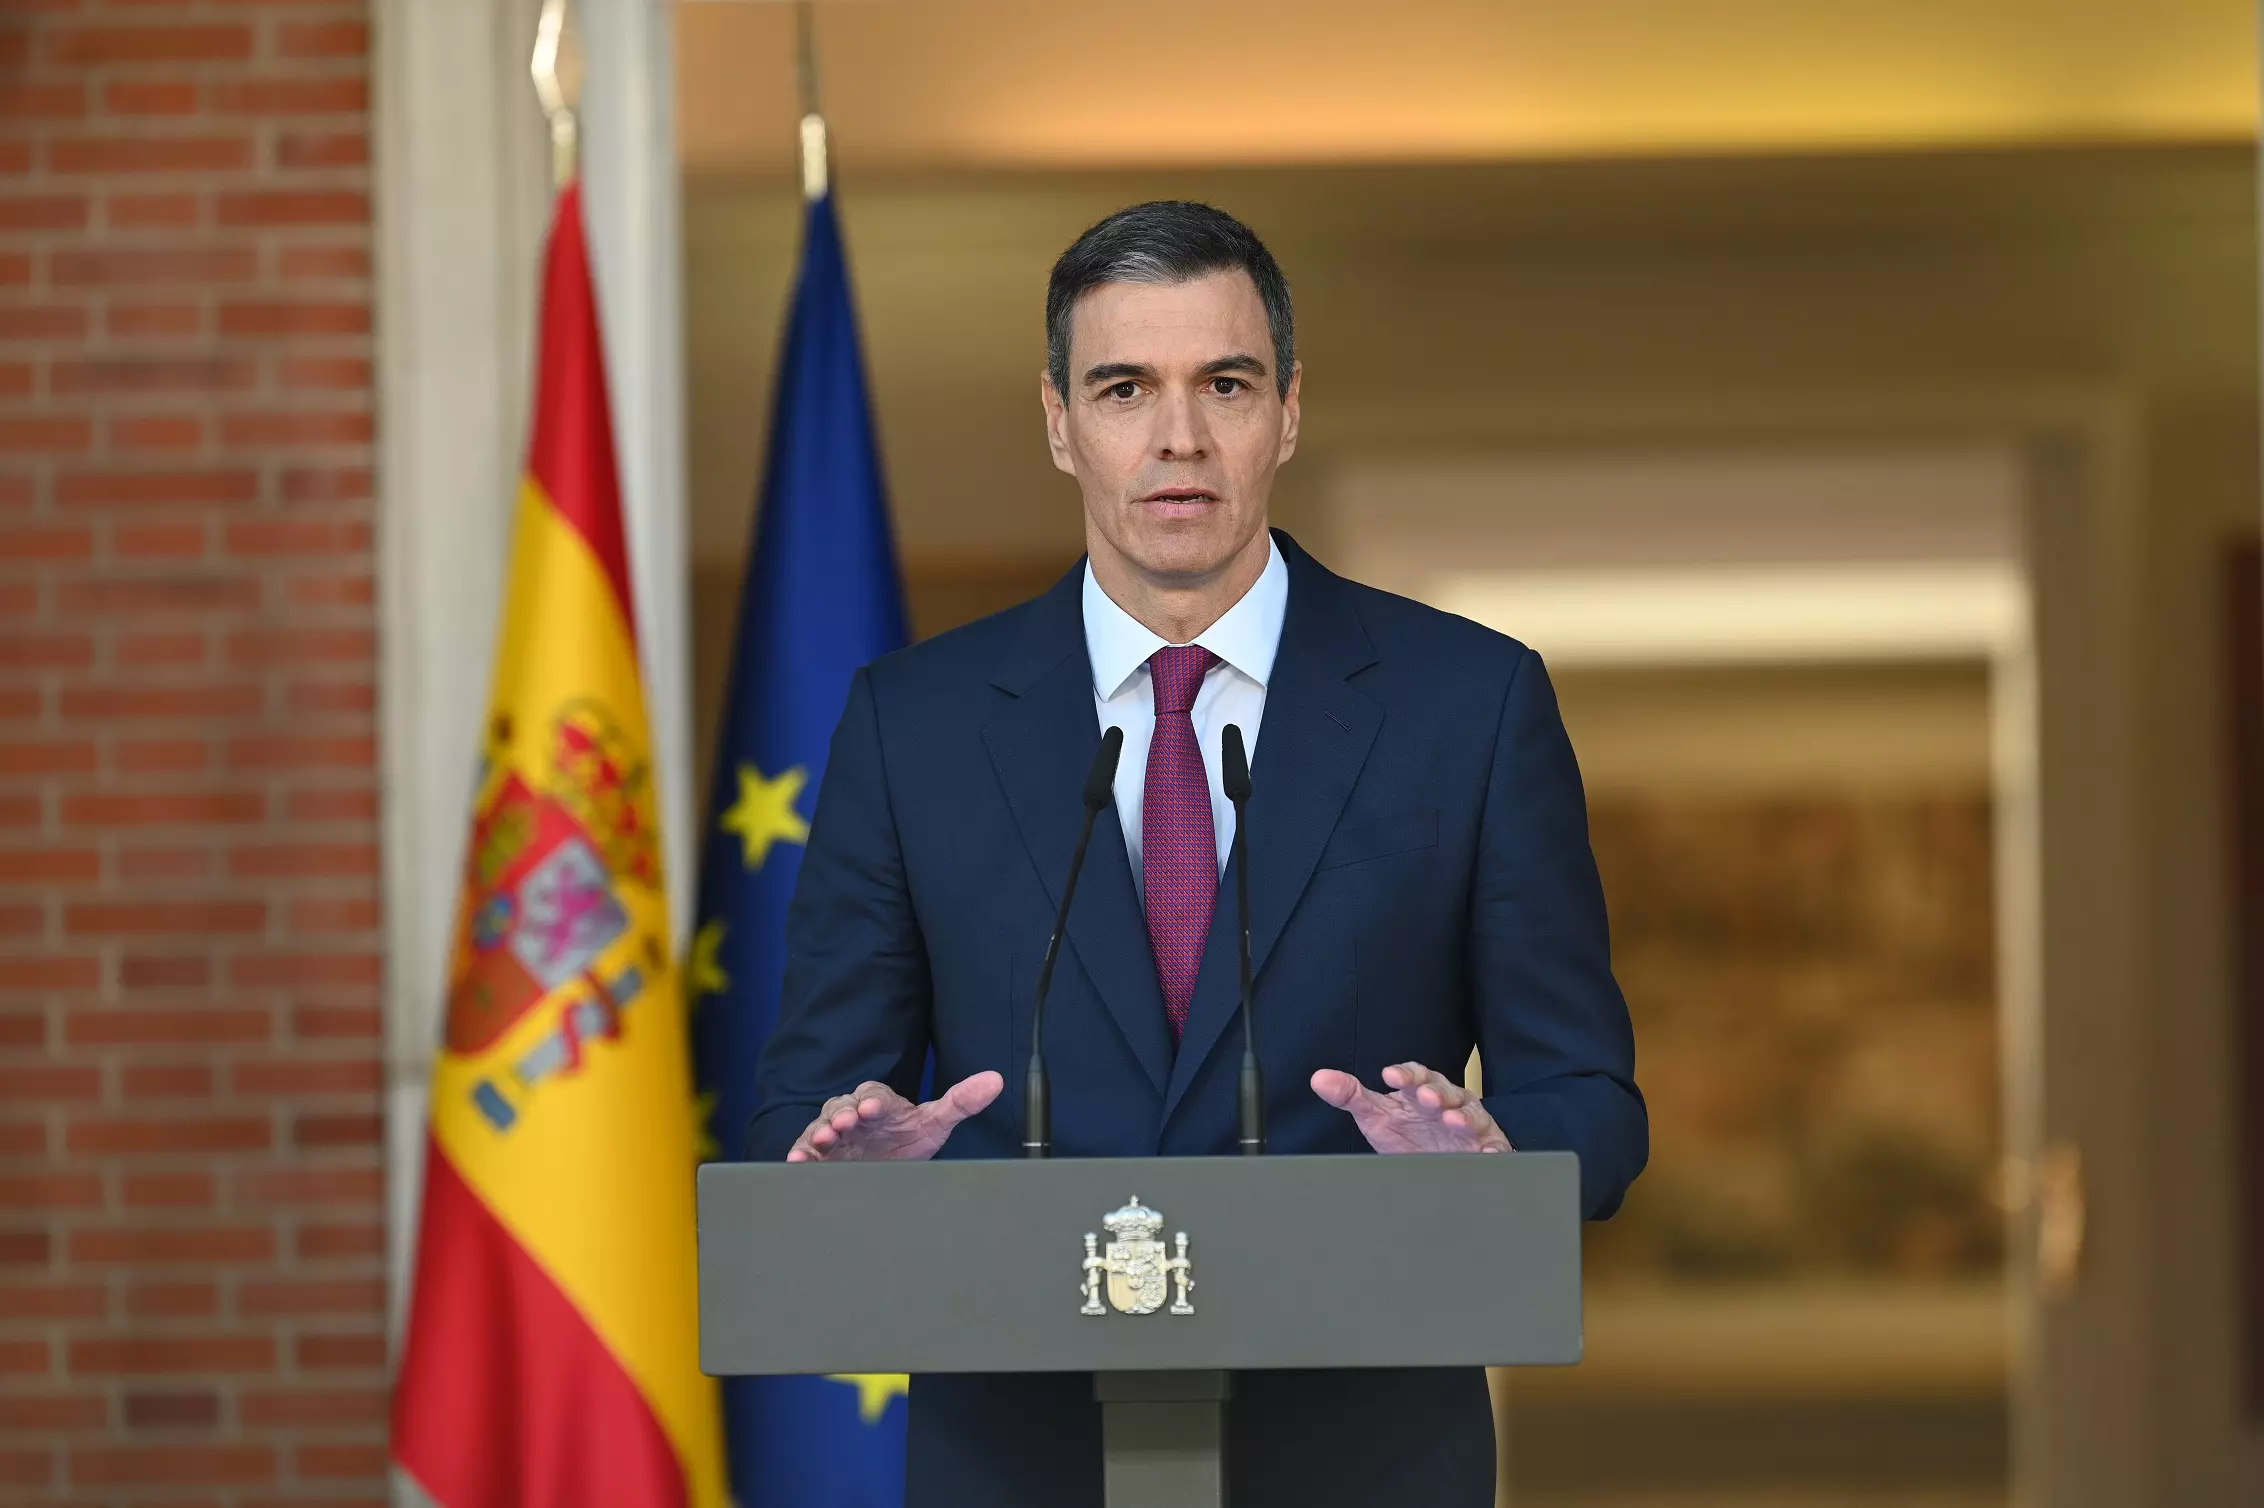 El presidente del Gobierno, Pedro Sánchez, este lunes durante su comparecencia en Moncloa para anunciar que continuará en su cargo. — Borja Puig de la Bellacasa / Moncloa